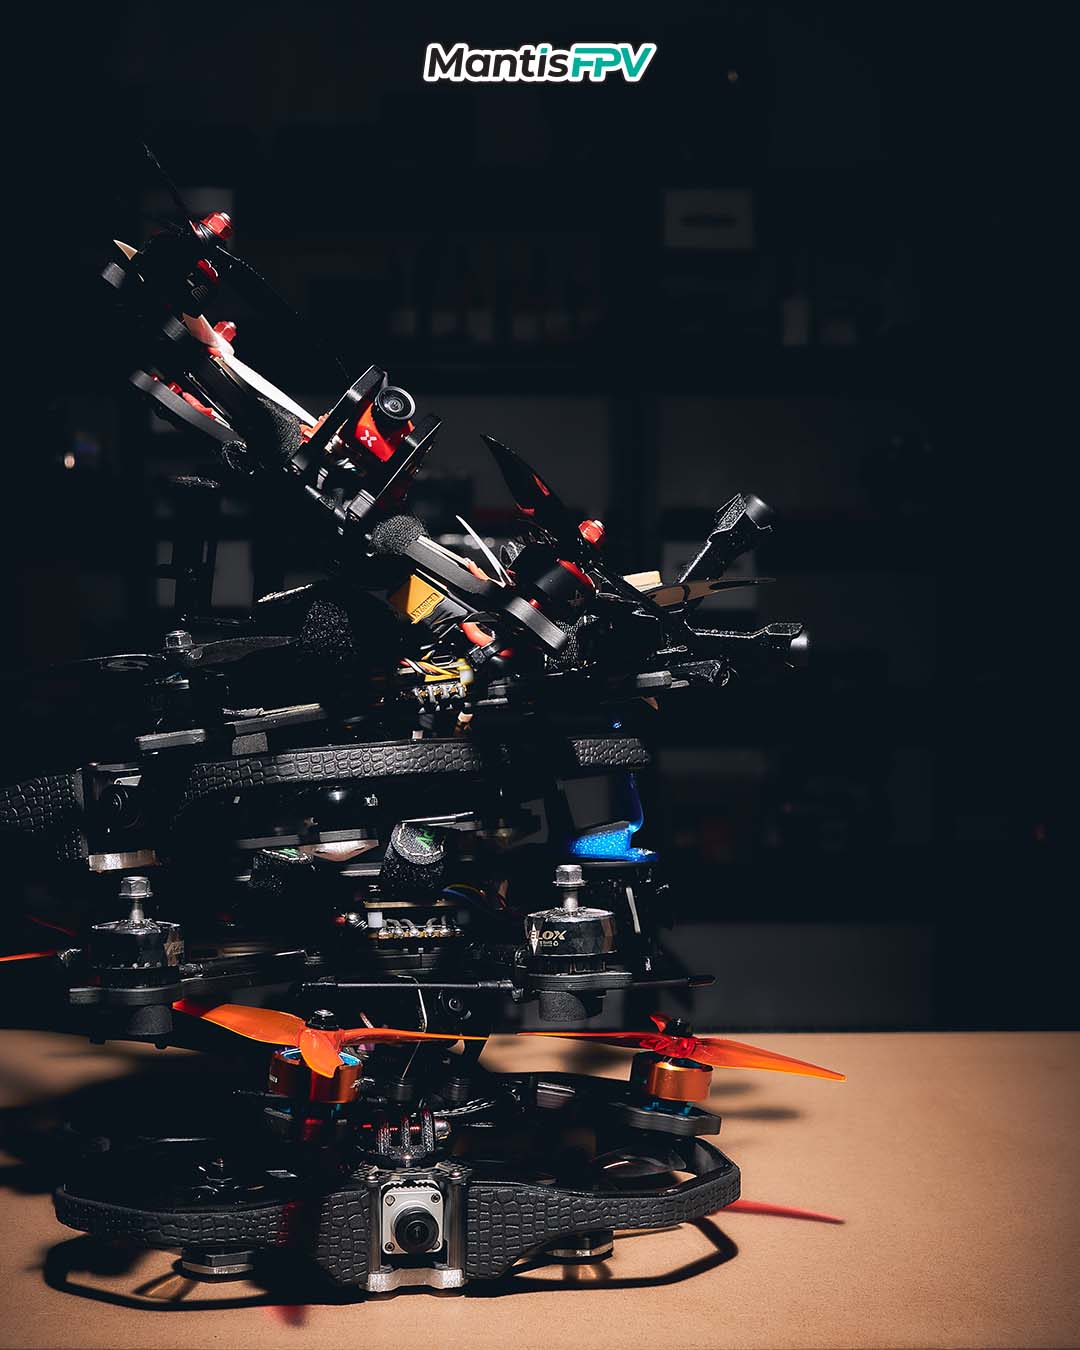 fpv drone stacked mantisFPV